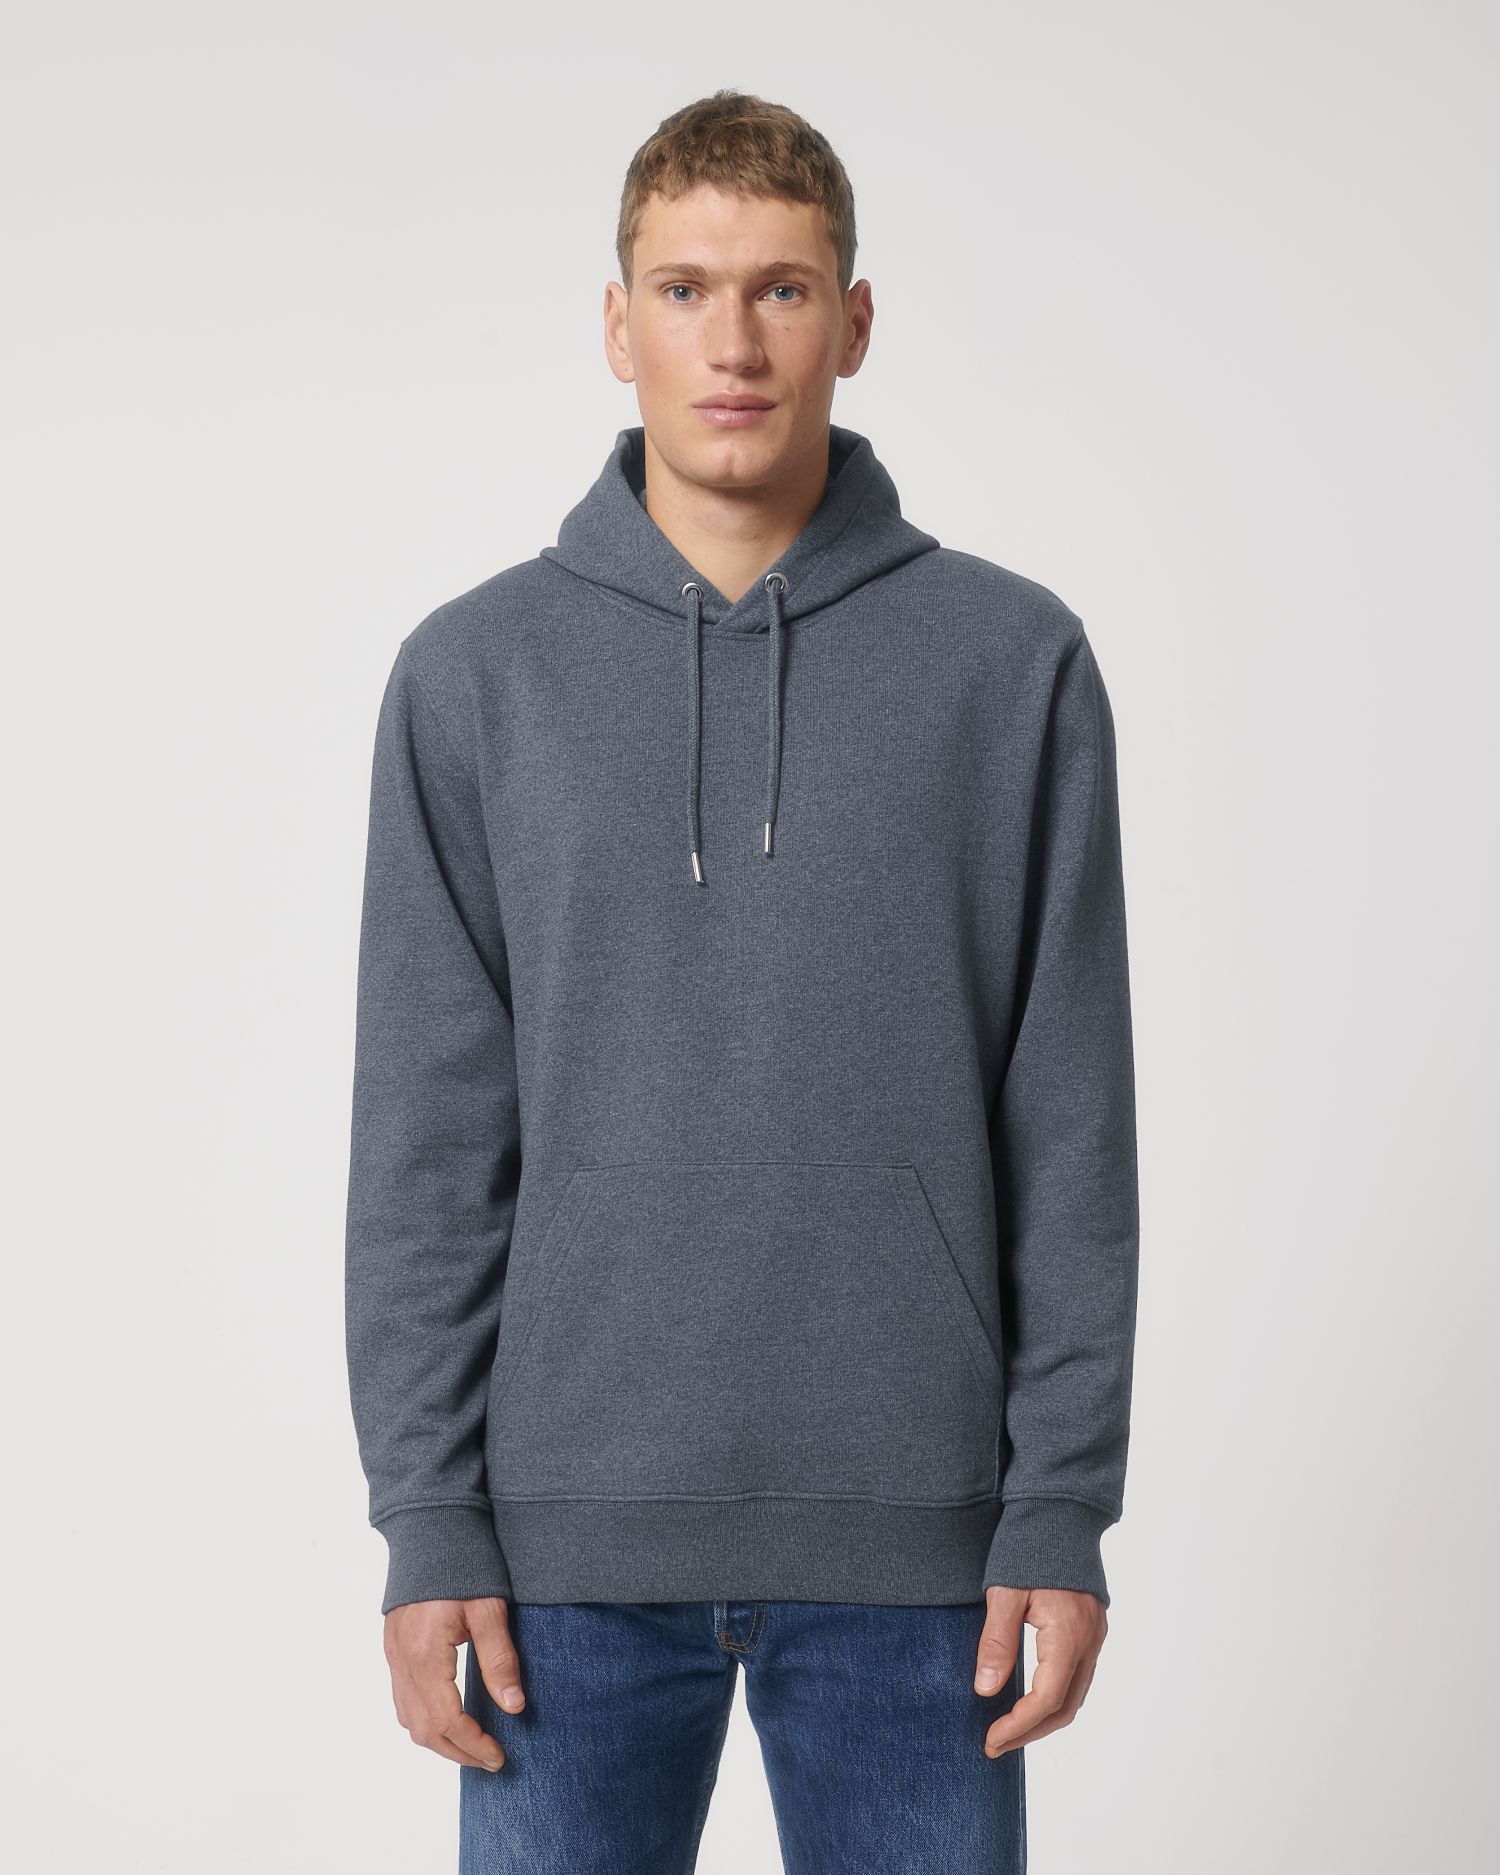 Hoodie sweatshirts RE-Cruiser in Farbe RE-Navy